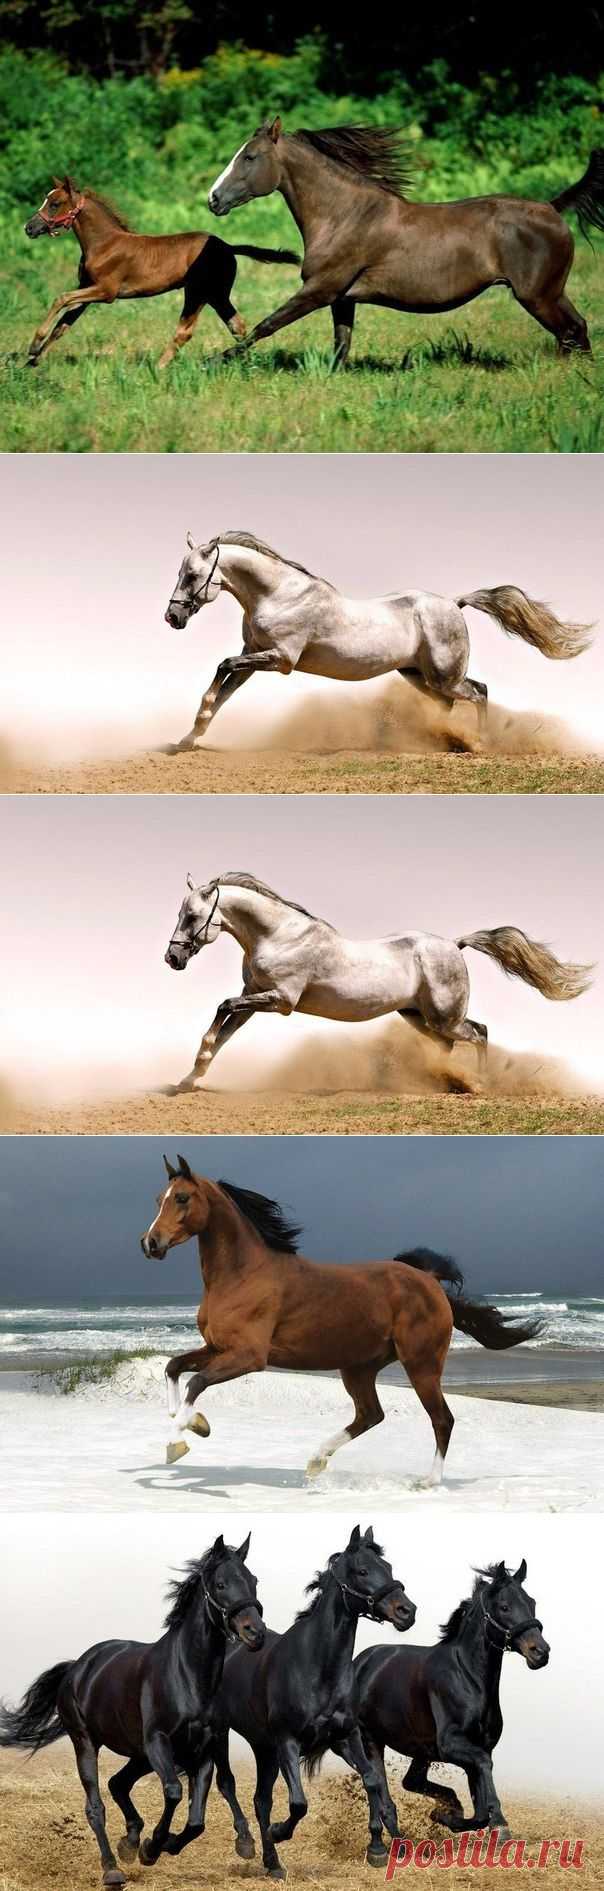 Благородные лошади | ВЗГЛЯНИ НА МИР С ИНТЕРЕСОМ